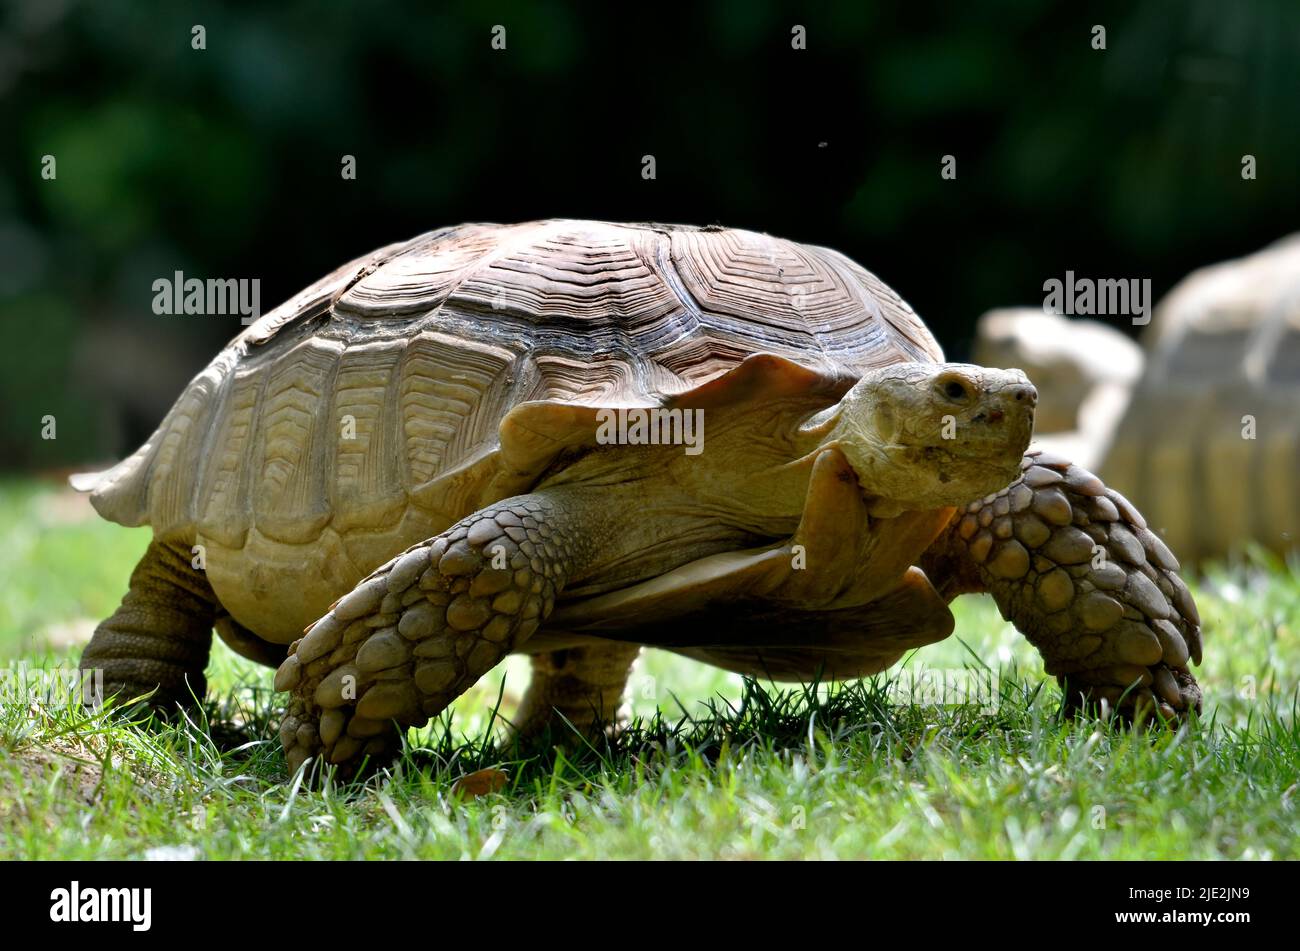 Primer plano de la tortuga africana o tortuga sulcata (Geochelone sulcata), visto desde el frente a nivel del suelo y caminando sobre hierba Foto de stock